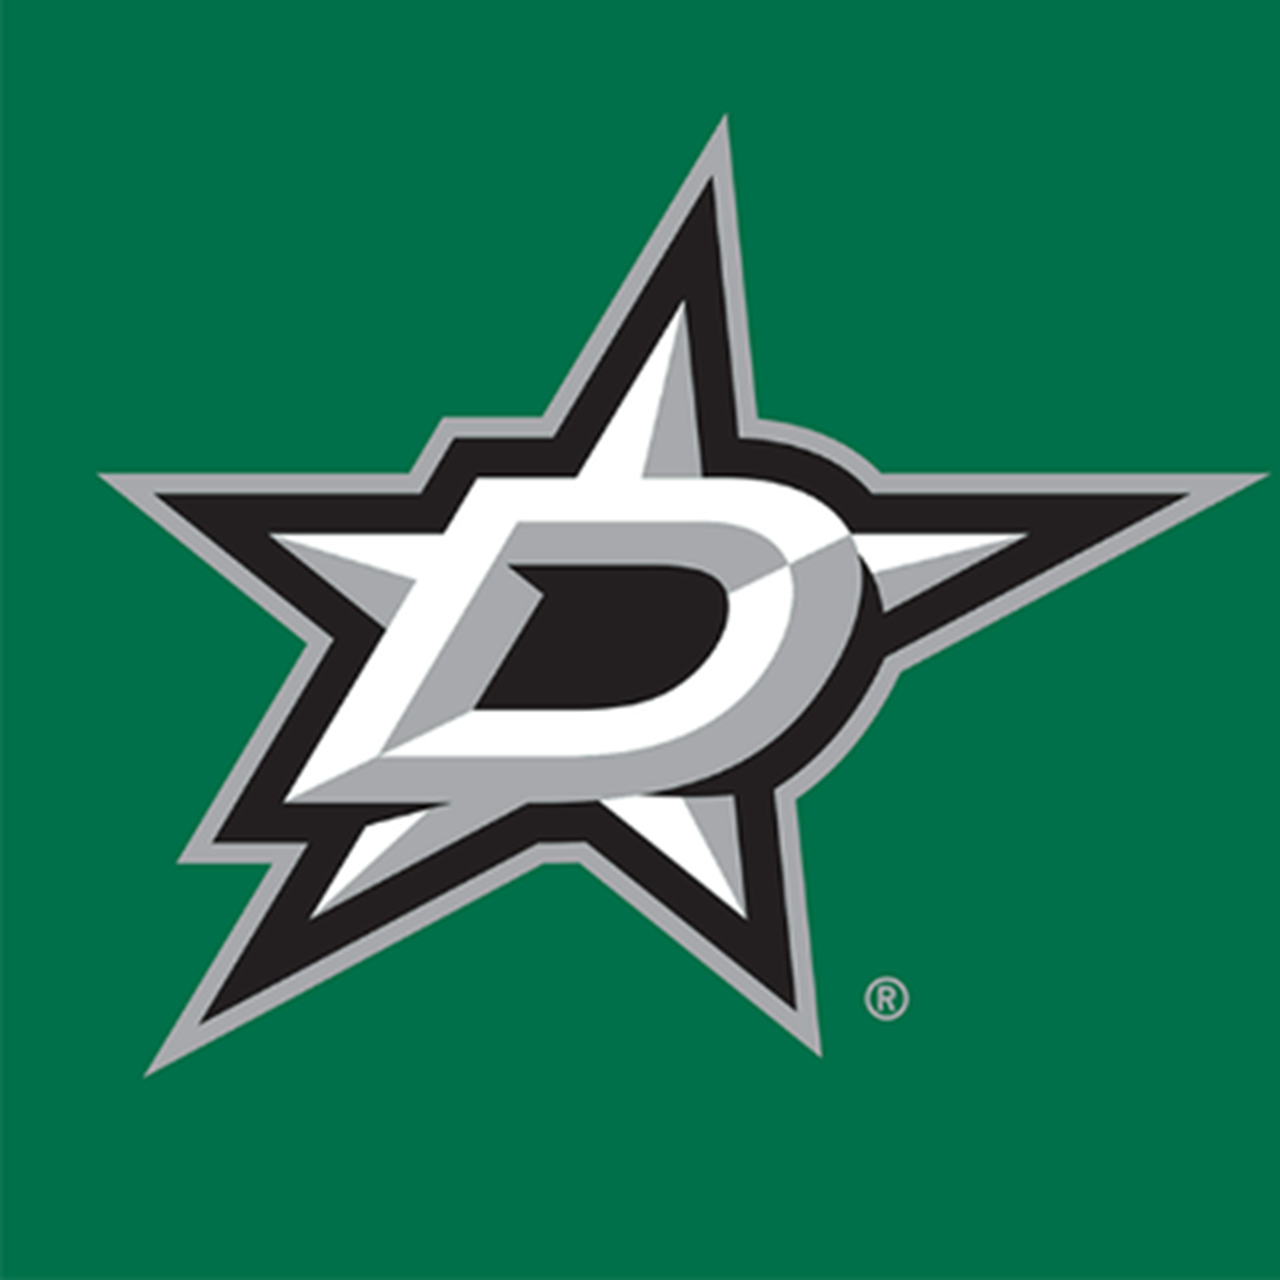 Are the NHL Dallas Stars successful in Texas? - Quora